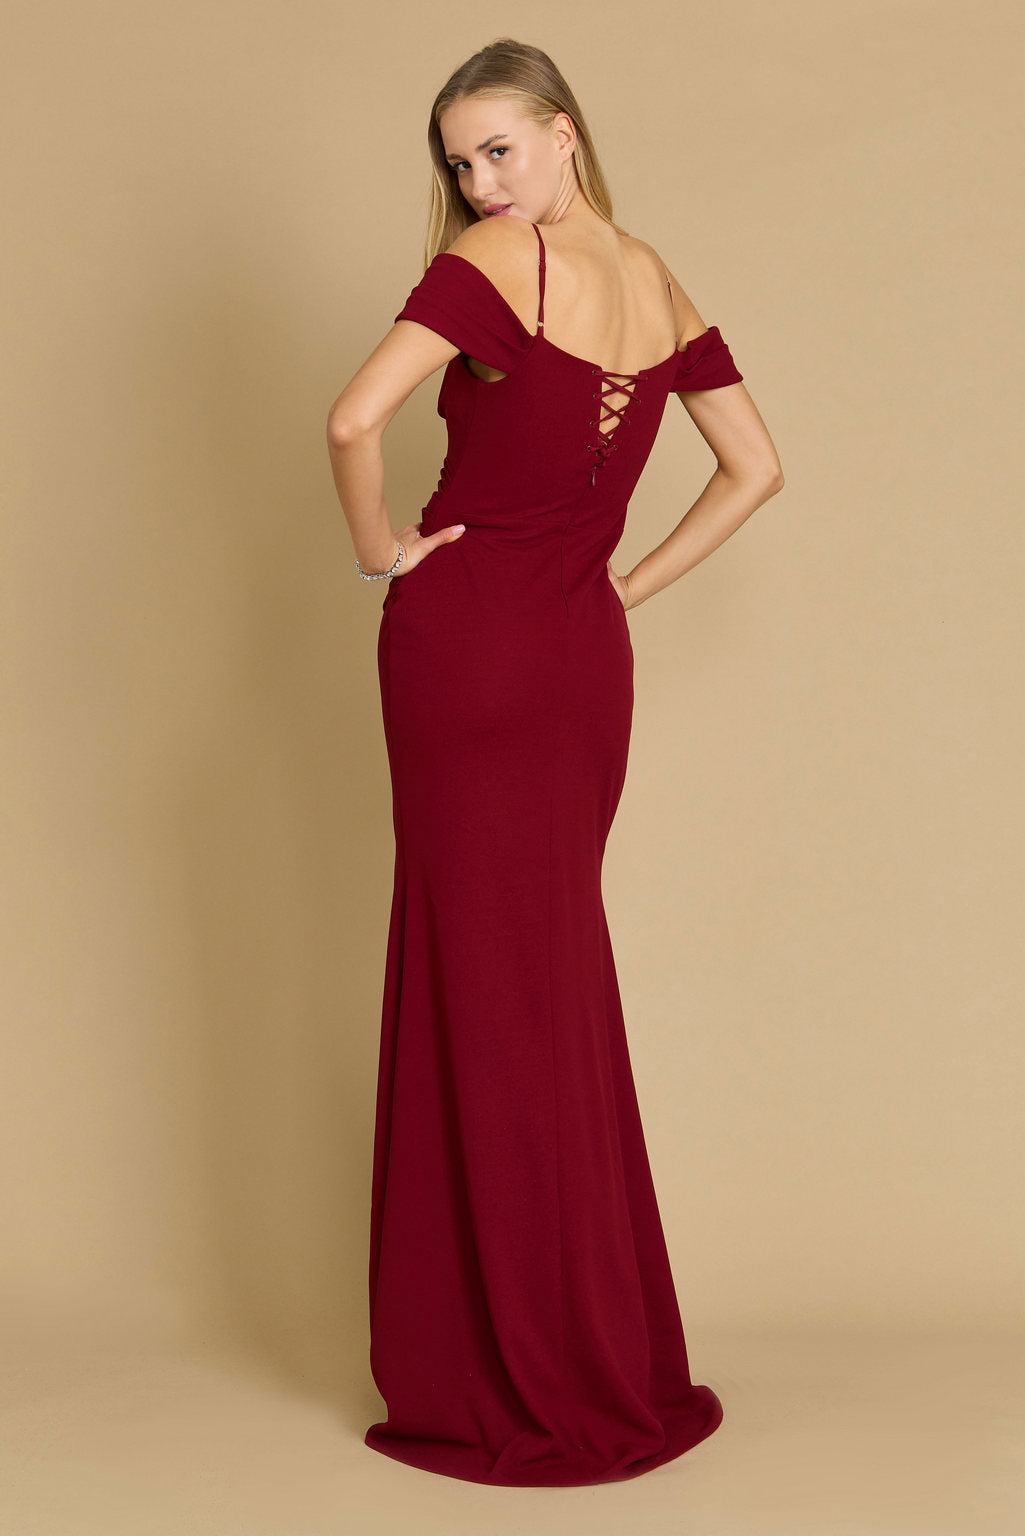 Formal Dresses Long Formal Off The Shoulder Wrap Evening Dress Burgundy